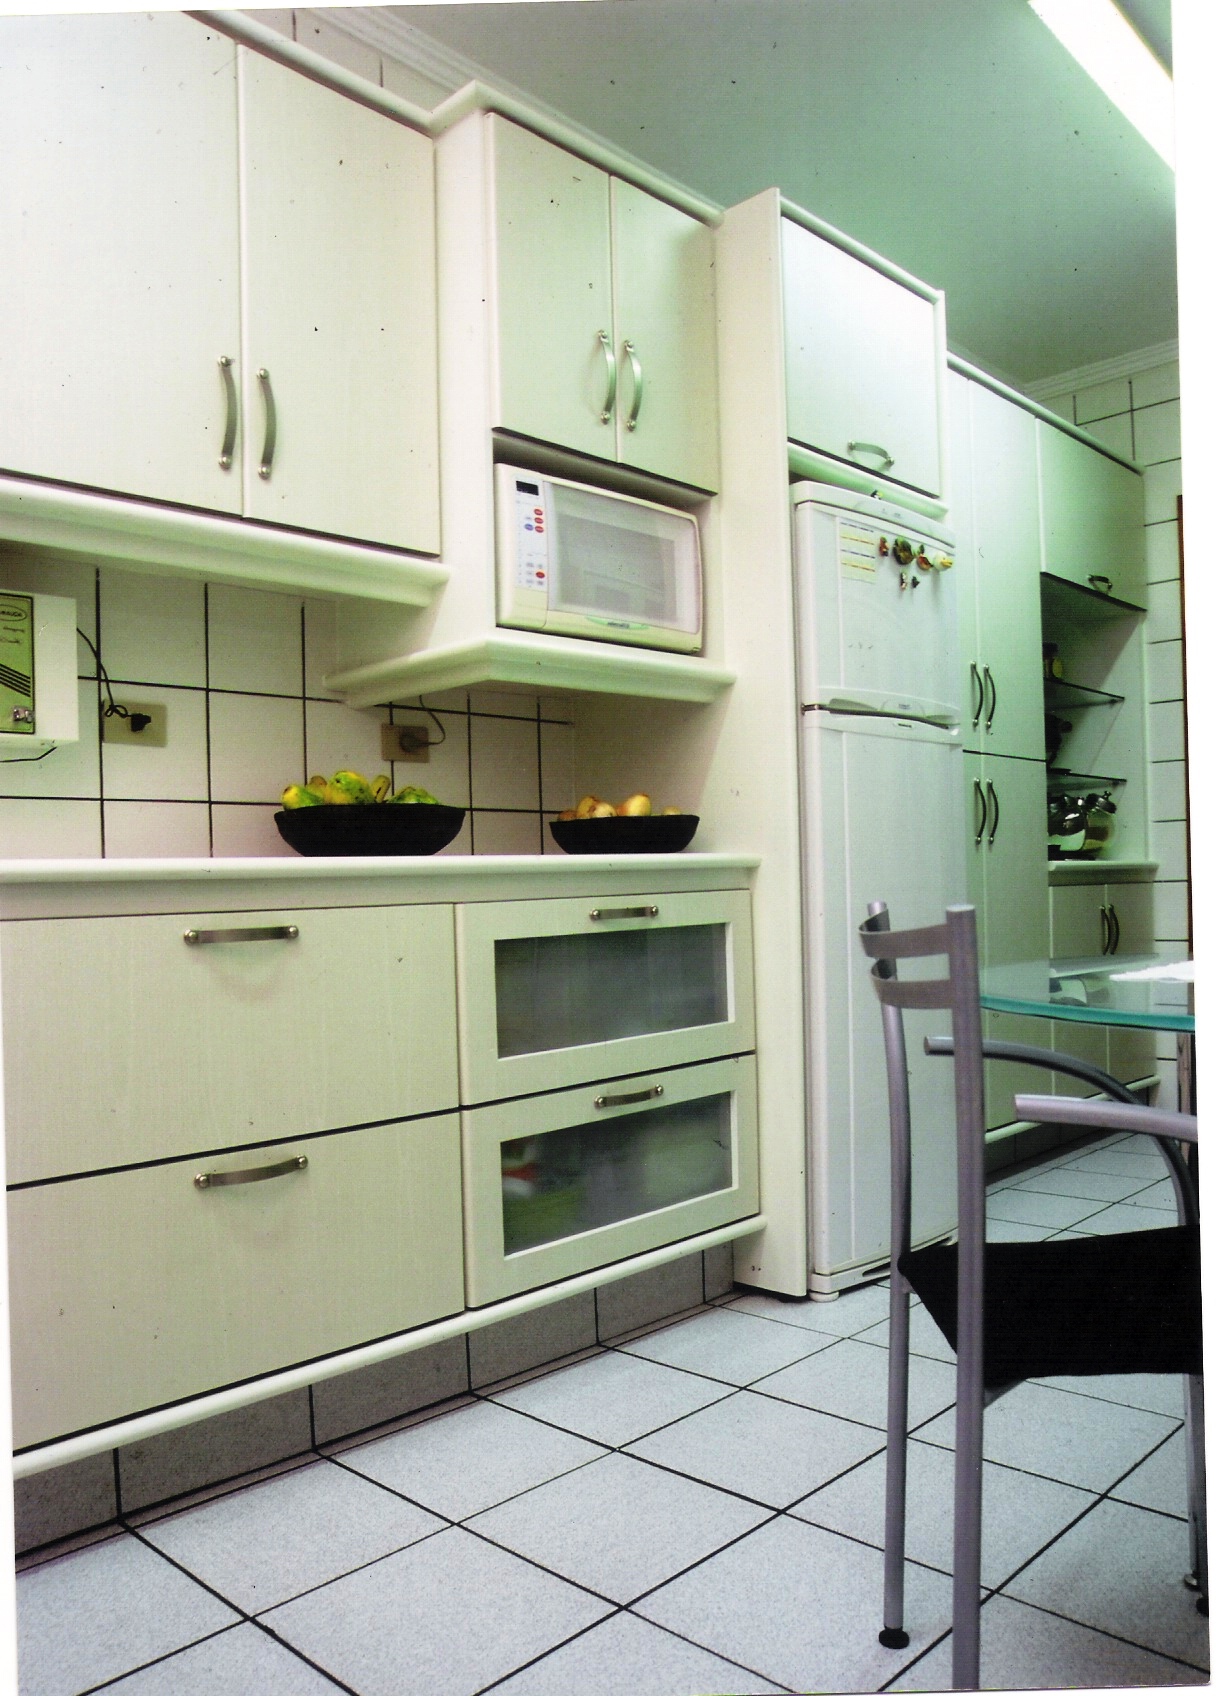 Cozinha Planejada no Uberaba em Curitiba  na Casa Chic Interiores.